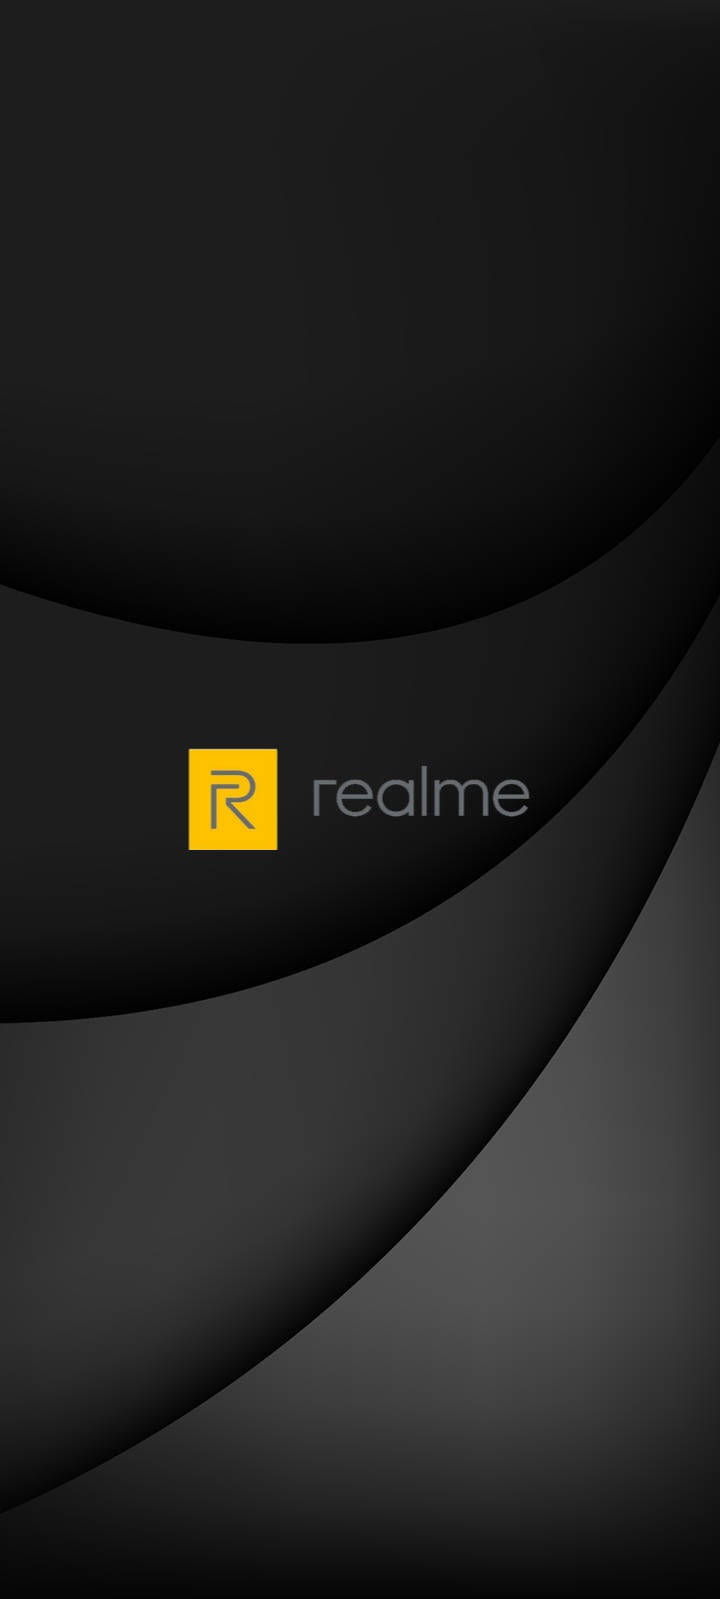 Modernedunkle Realme Logo Wallpaper